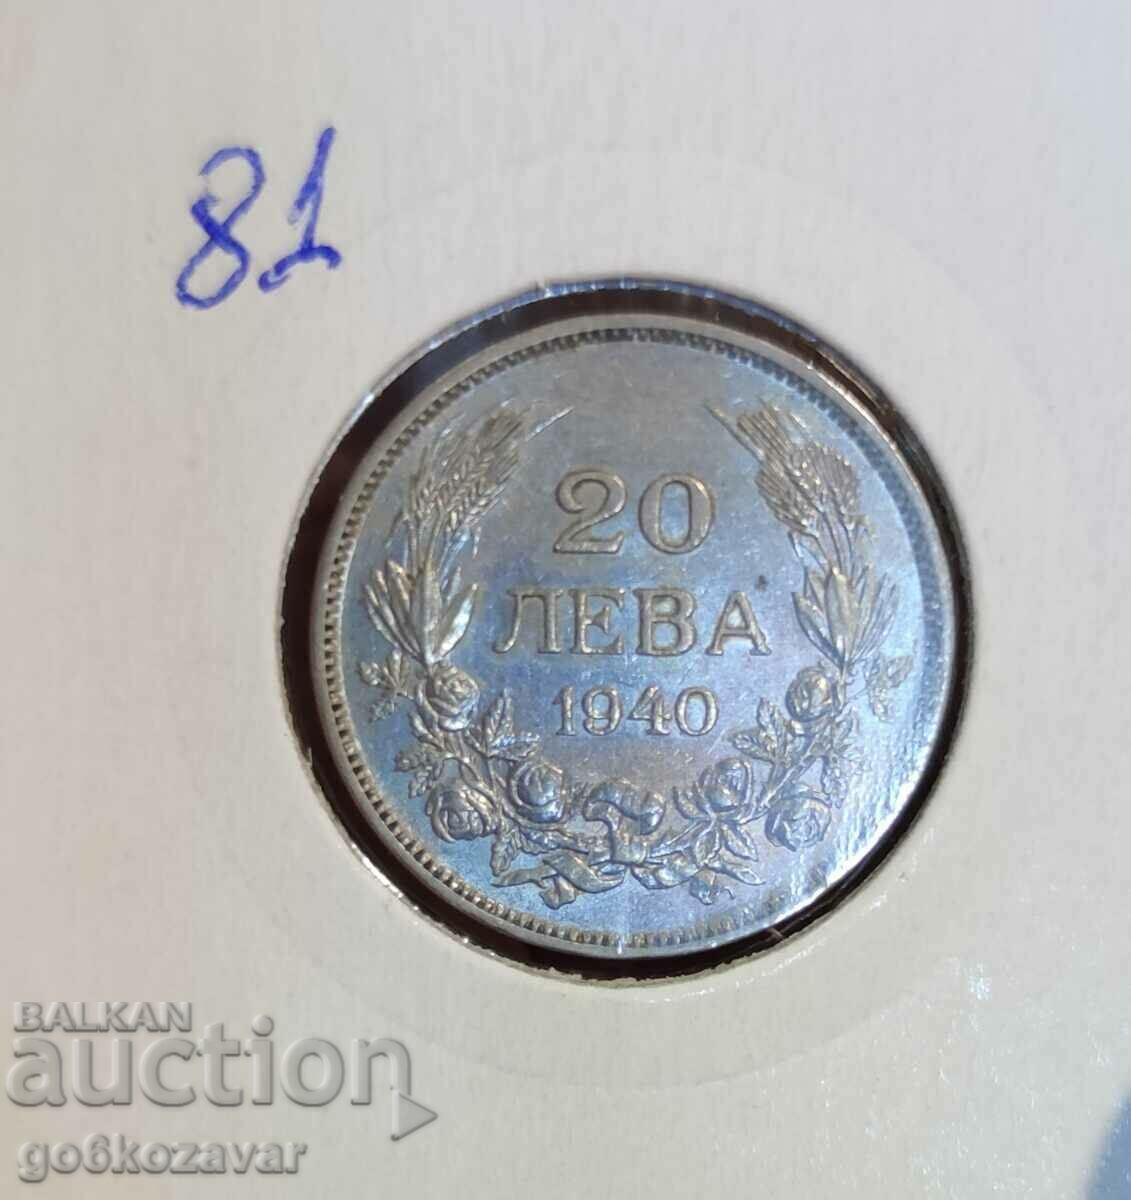 Bulgaria 20 BGN 1940 Collection!